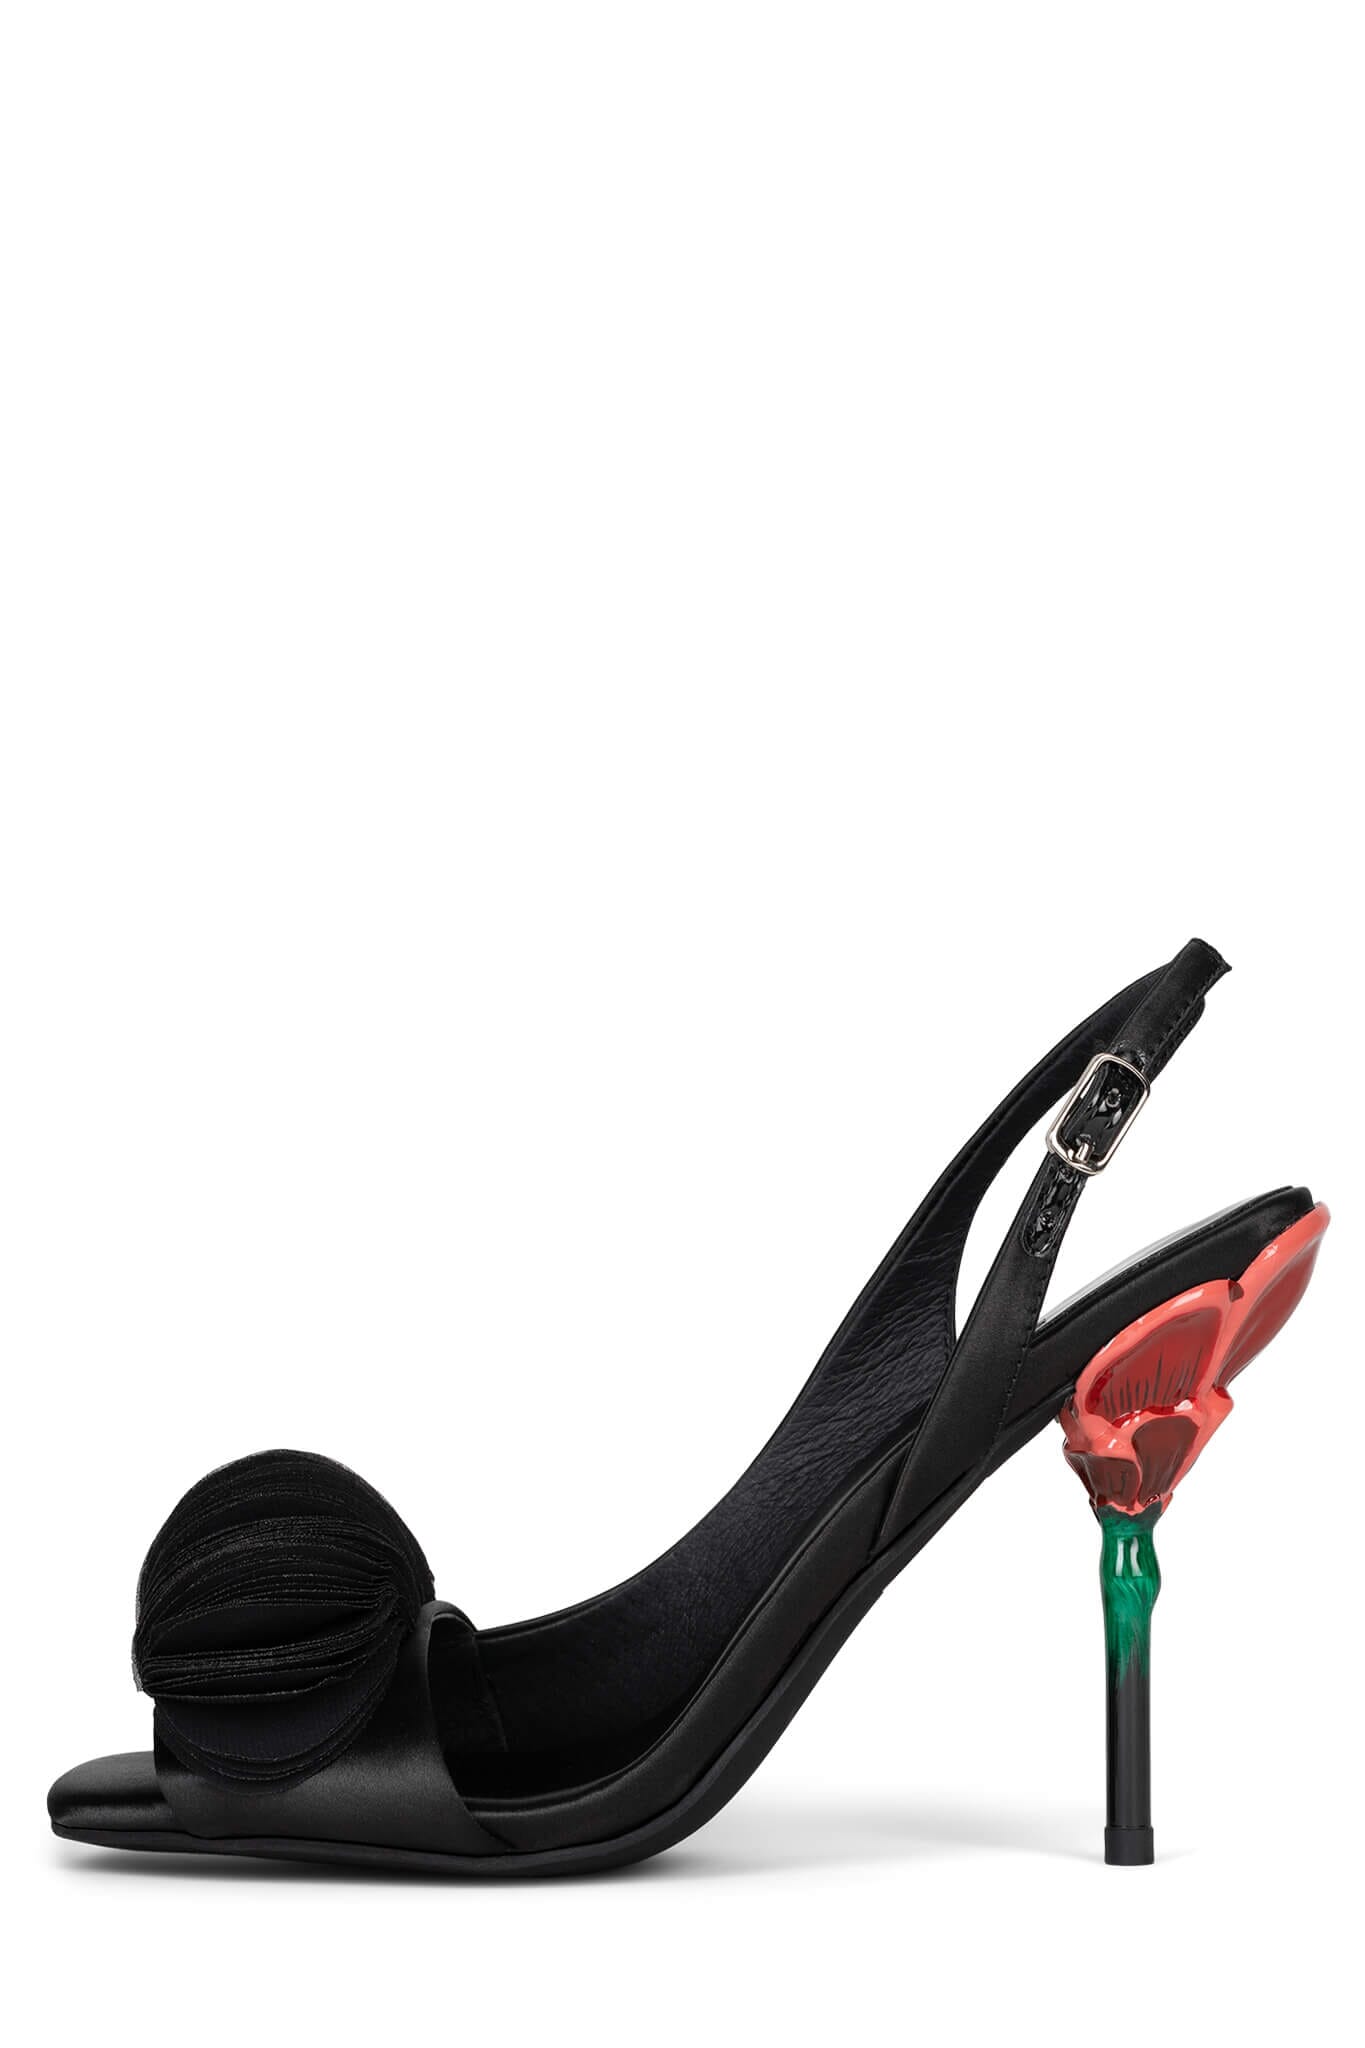 Double red flower heel sandals in black satin